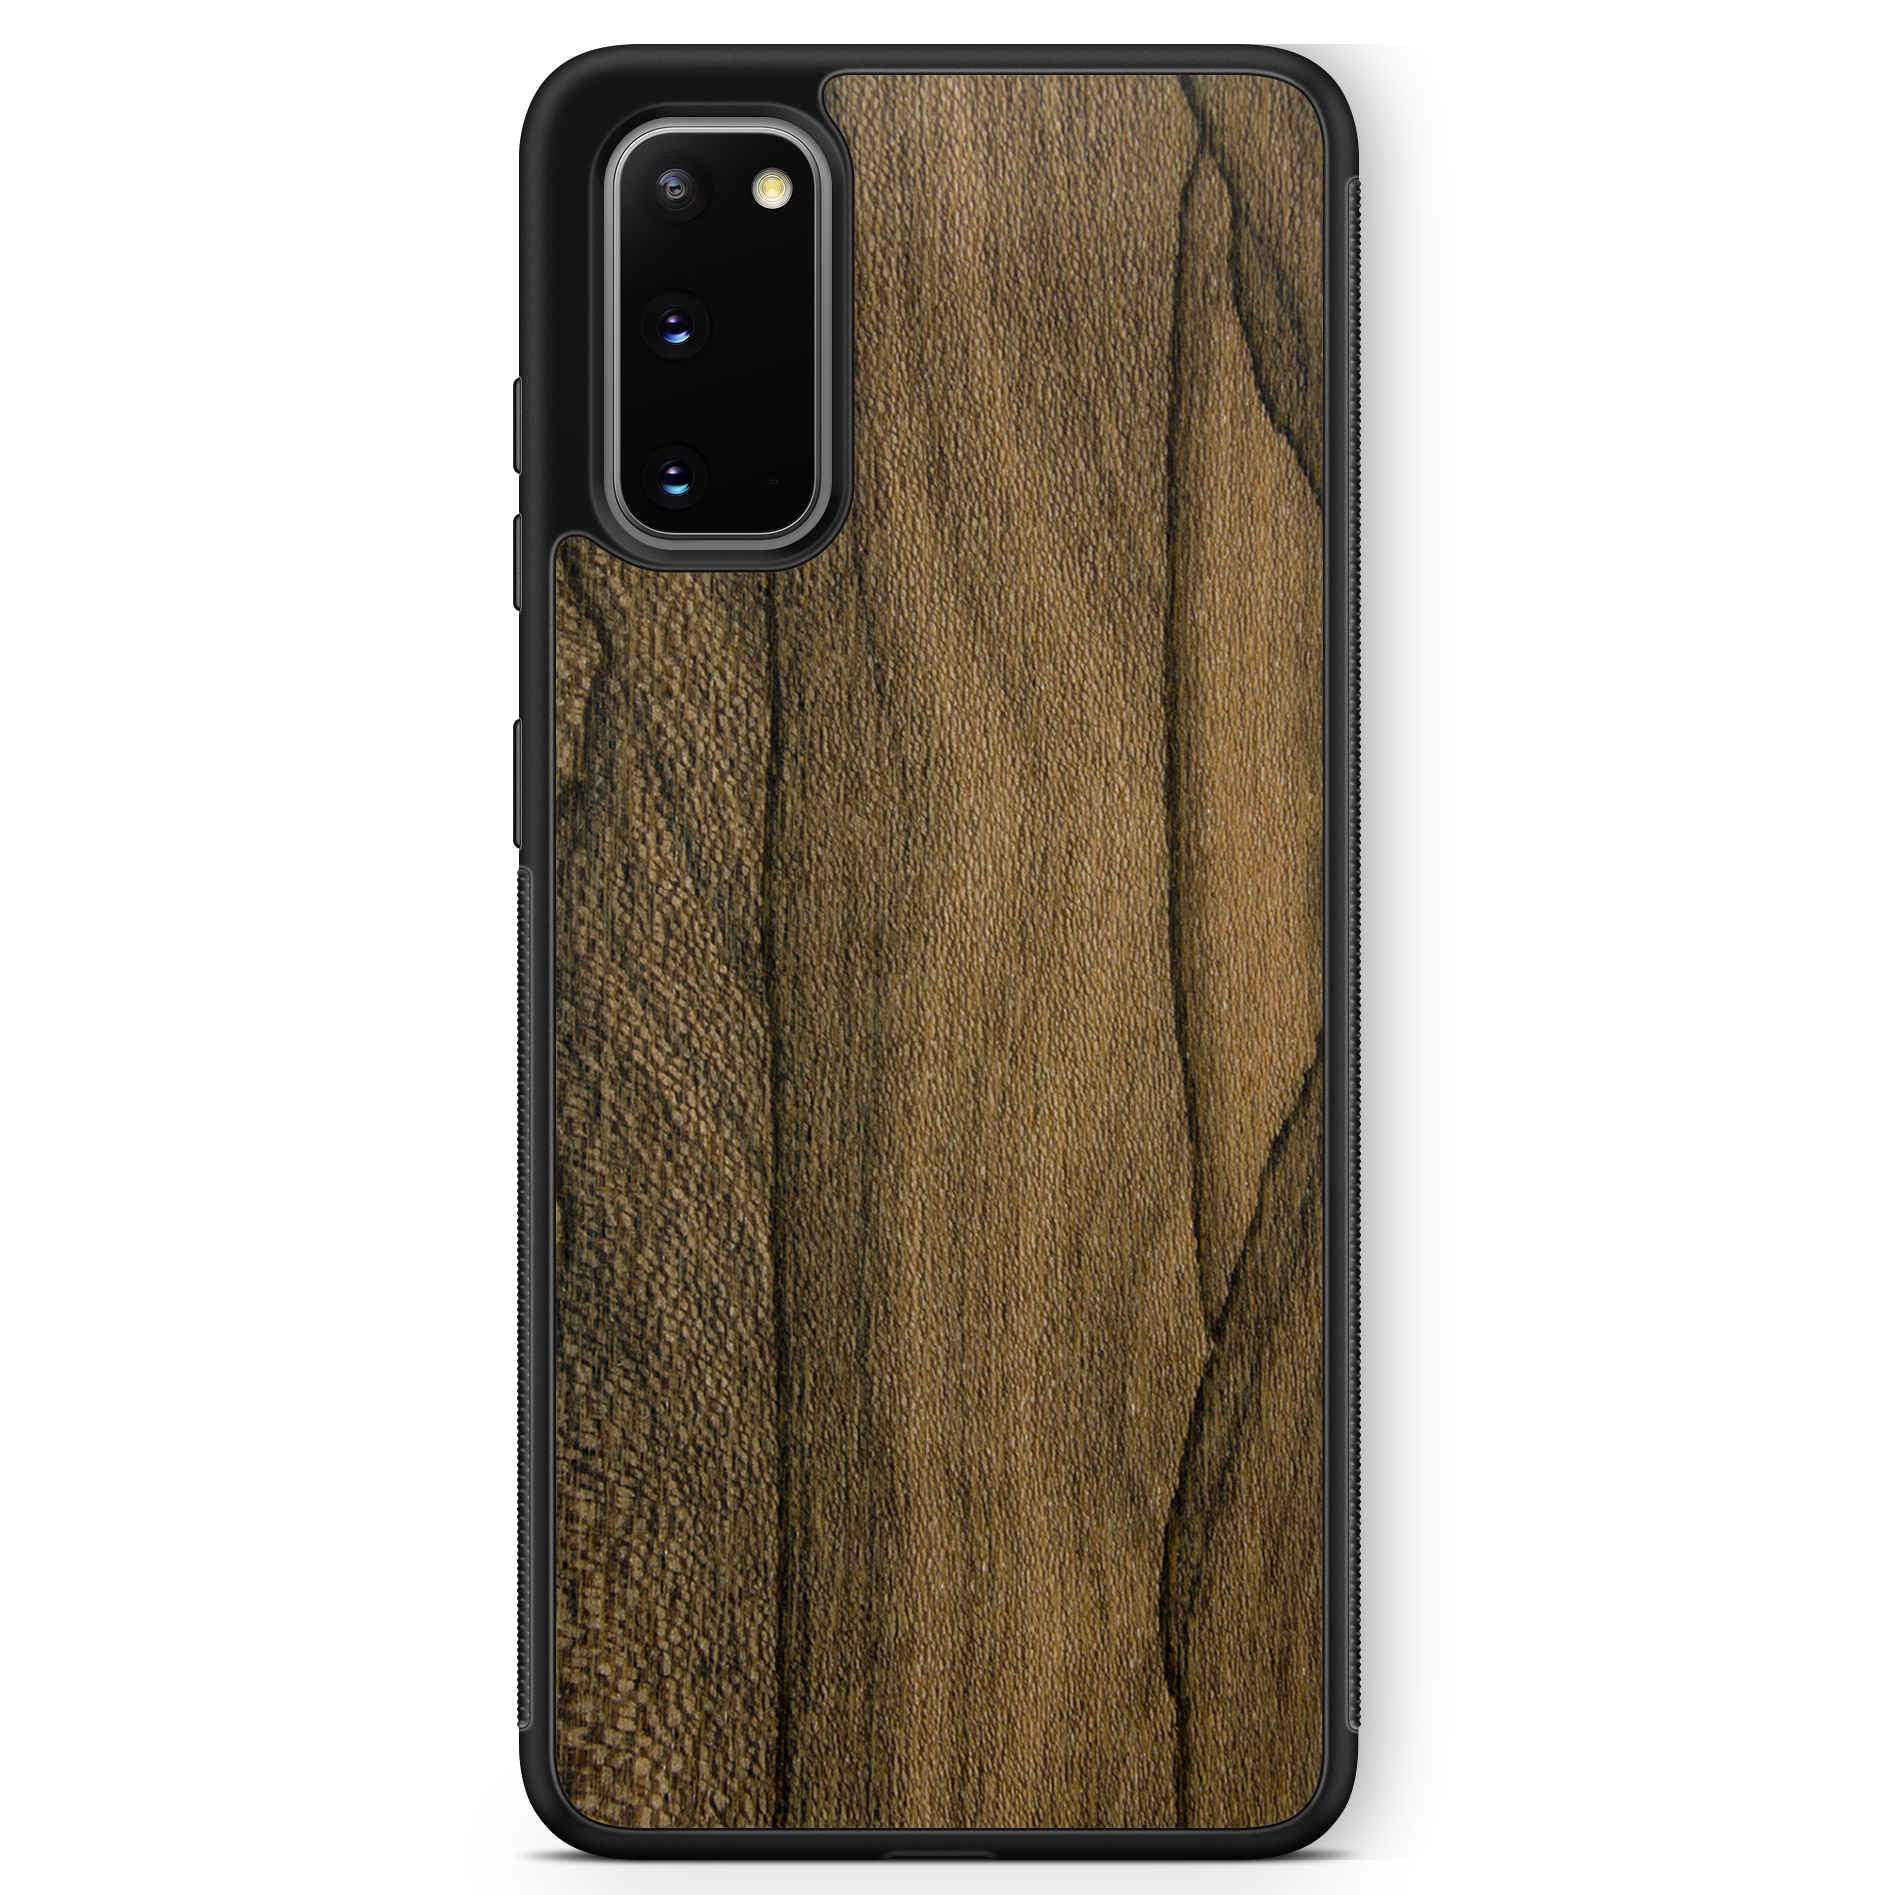 Ziricote Rare Wood Phone Case